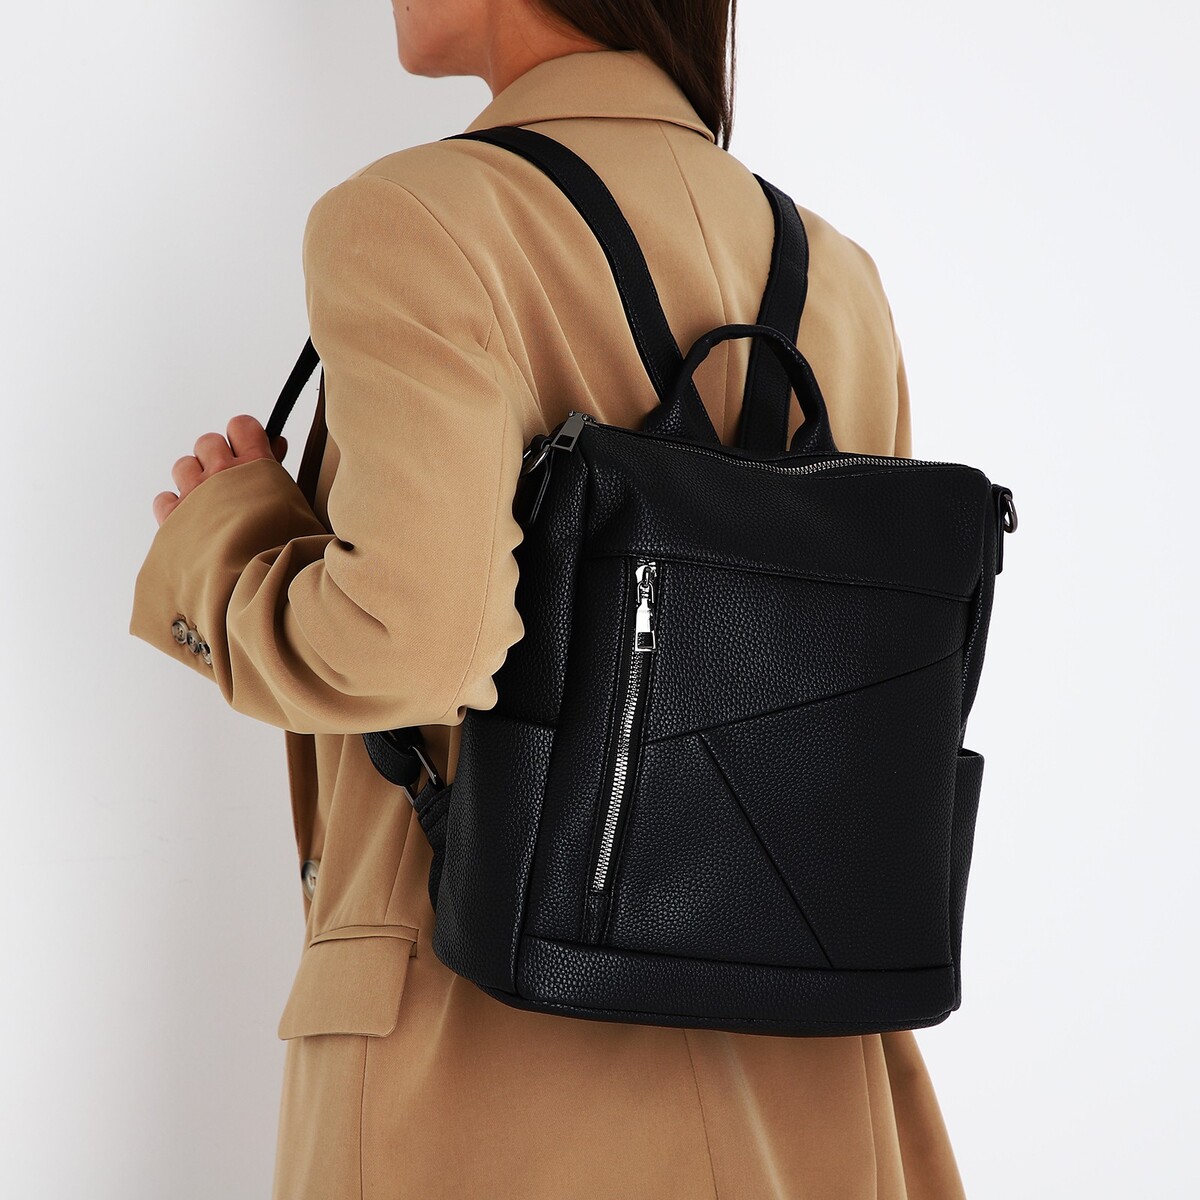 Рюкзак женский из искусственной кожи на молнии, 4 кармана, цвет черный рюкзак молодежный из искусственной кожи на молнии 4 кармана